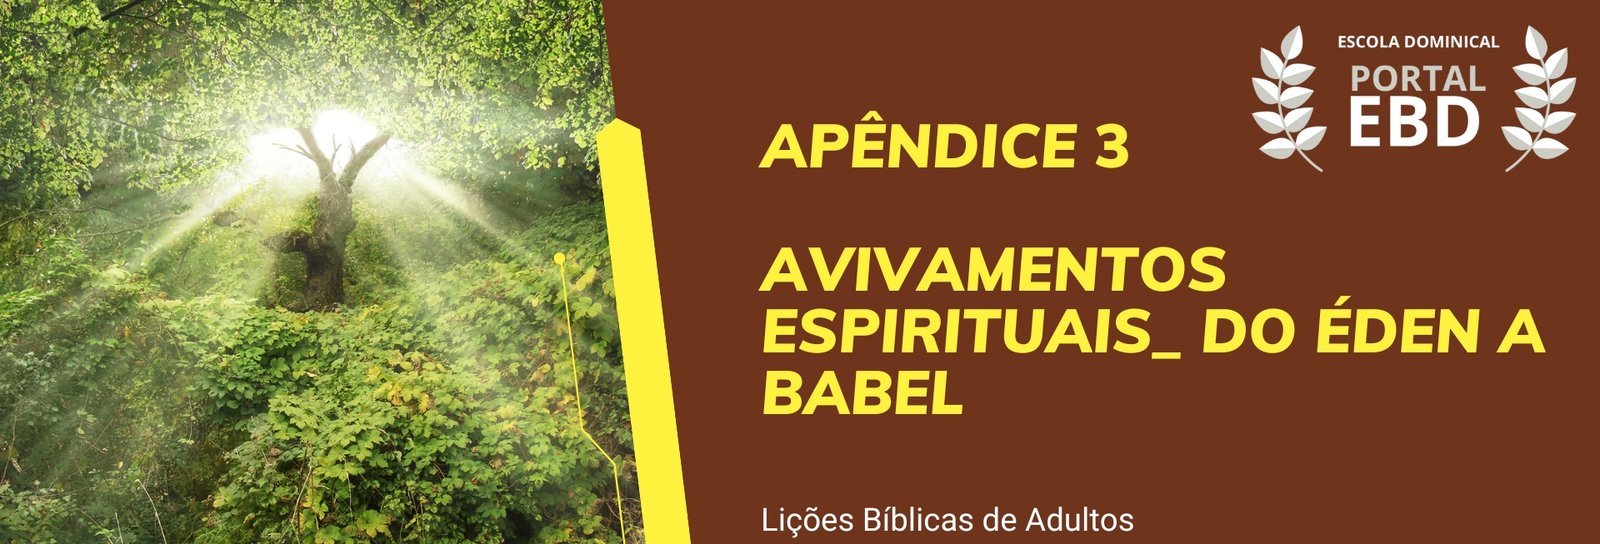 Apêndice 3 - Avivamentos espirituais: do Éden a Babel